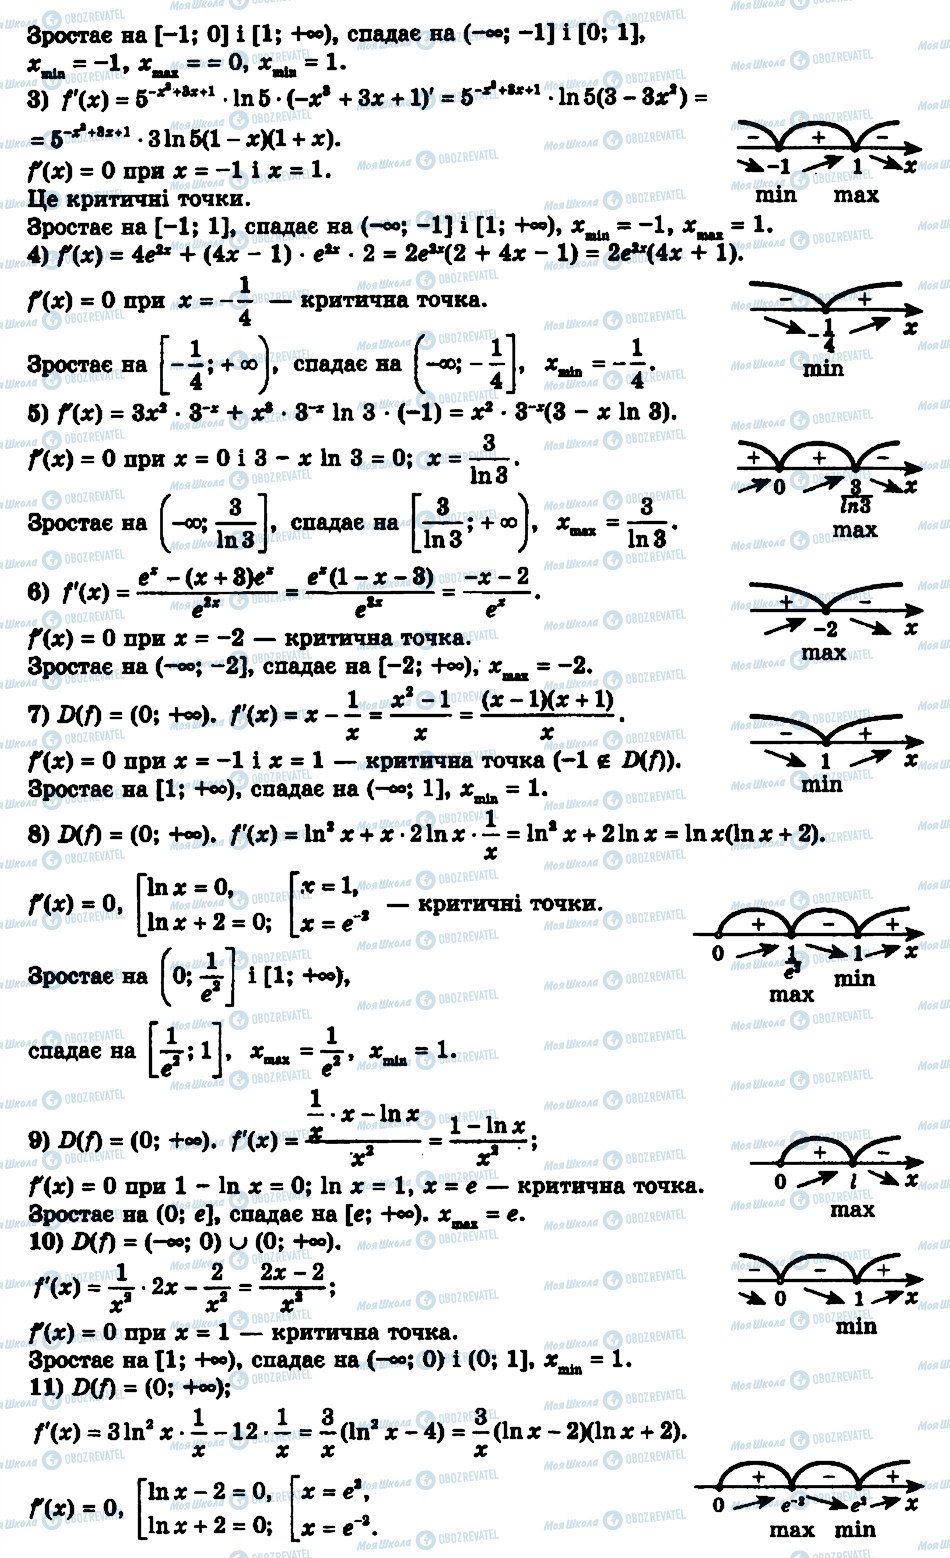 ГДЗ Алгебра 11 класс страница 18